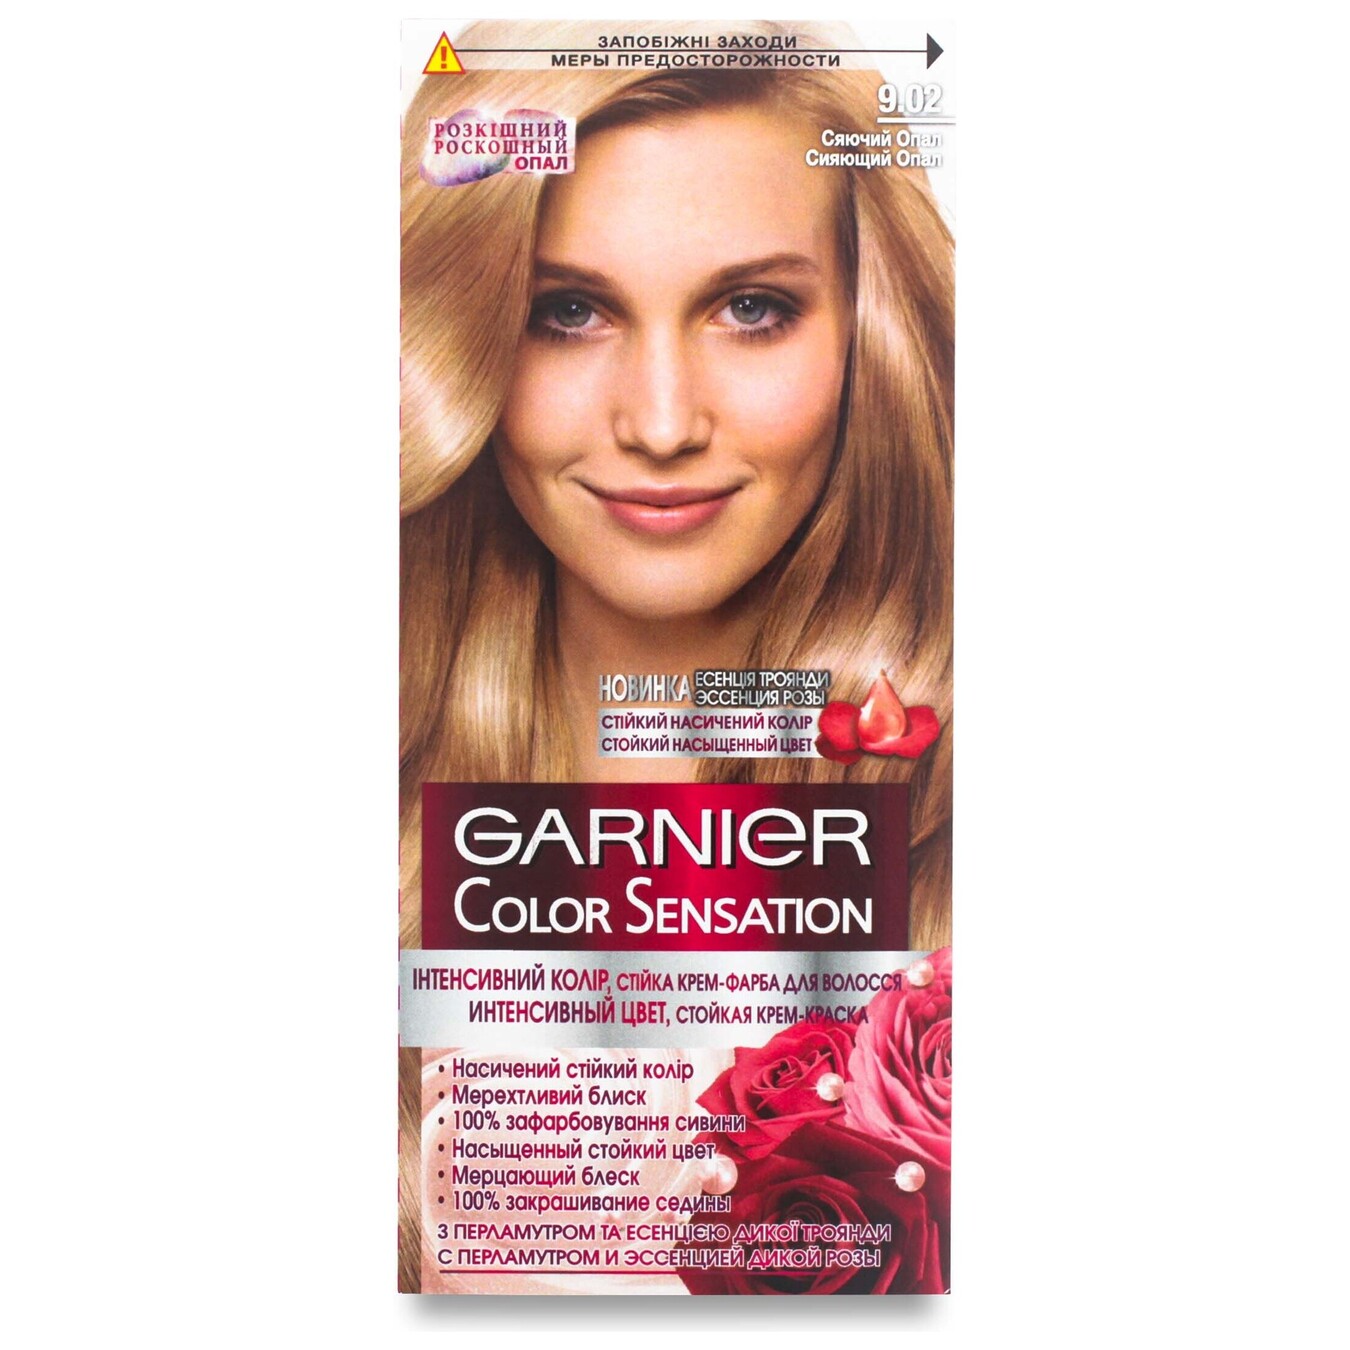 Крем-фарба стійка для волосся Garnier Color Sensation Інтенсивний колірстійка відтінок 9.02